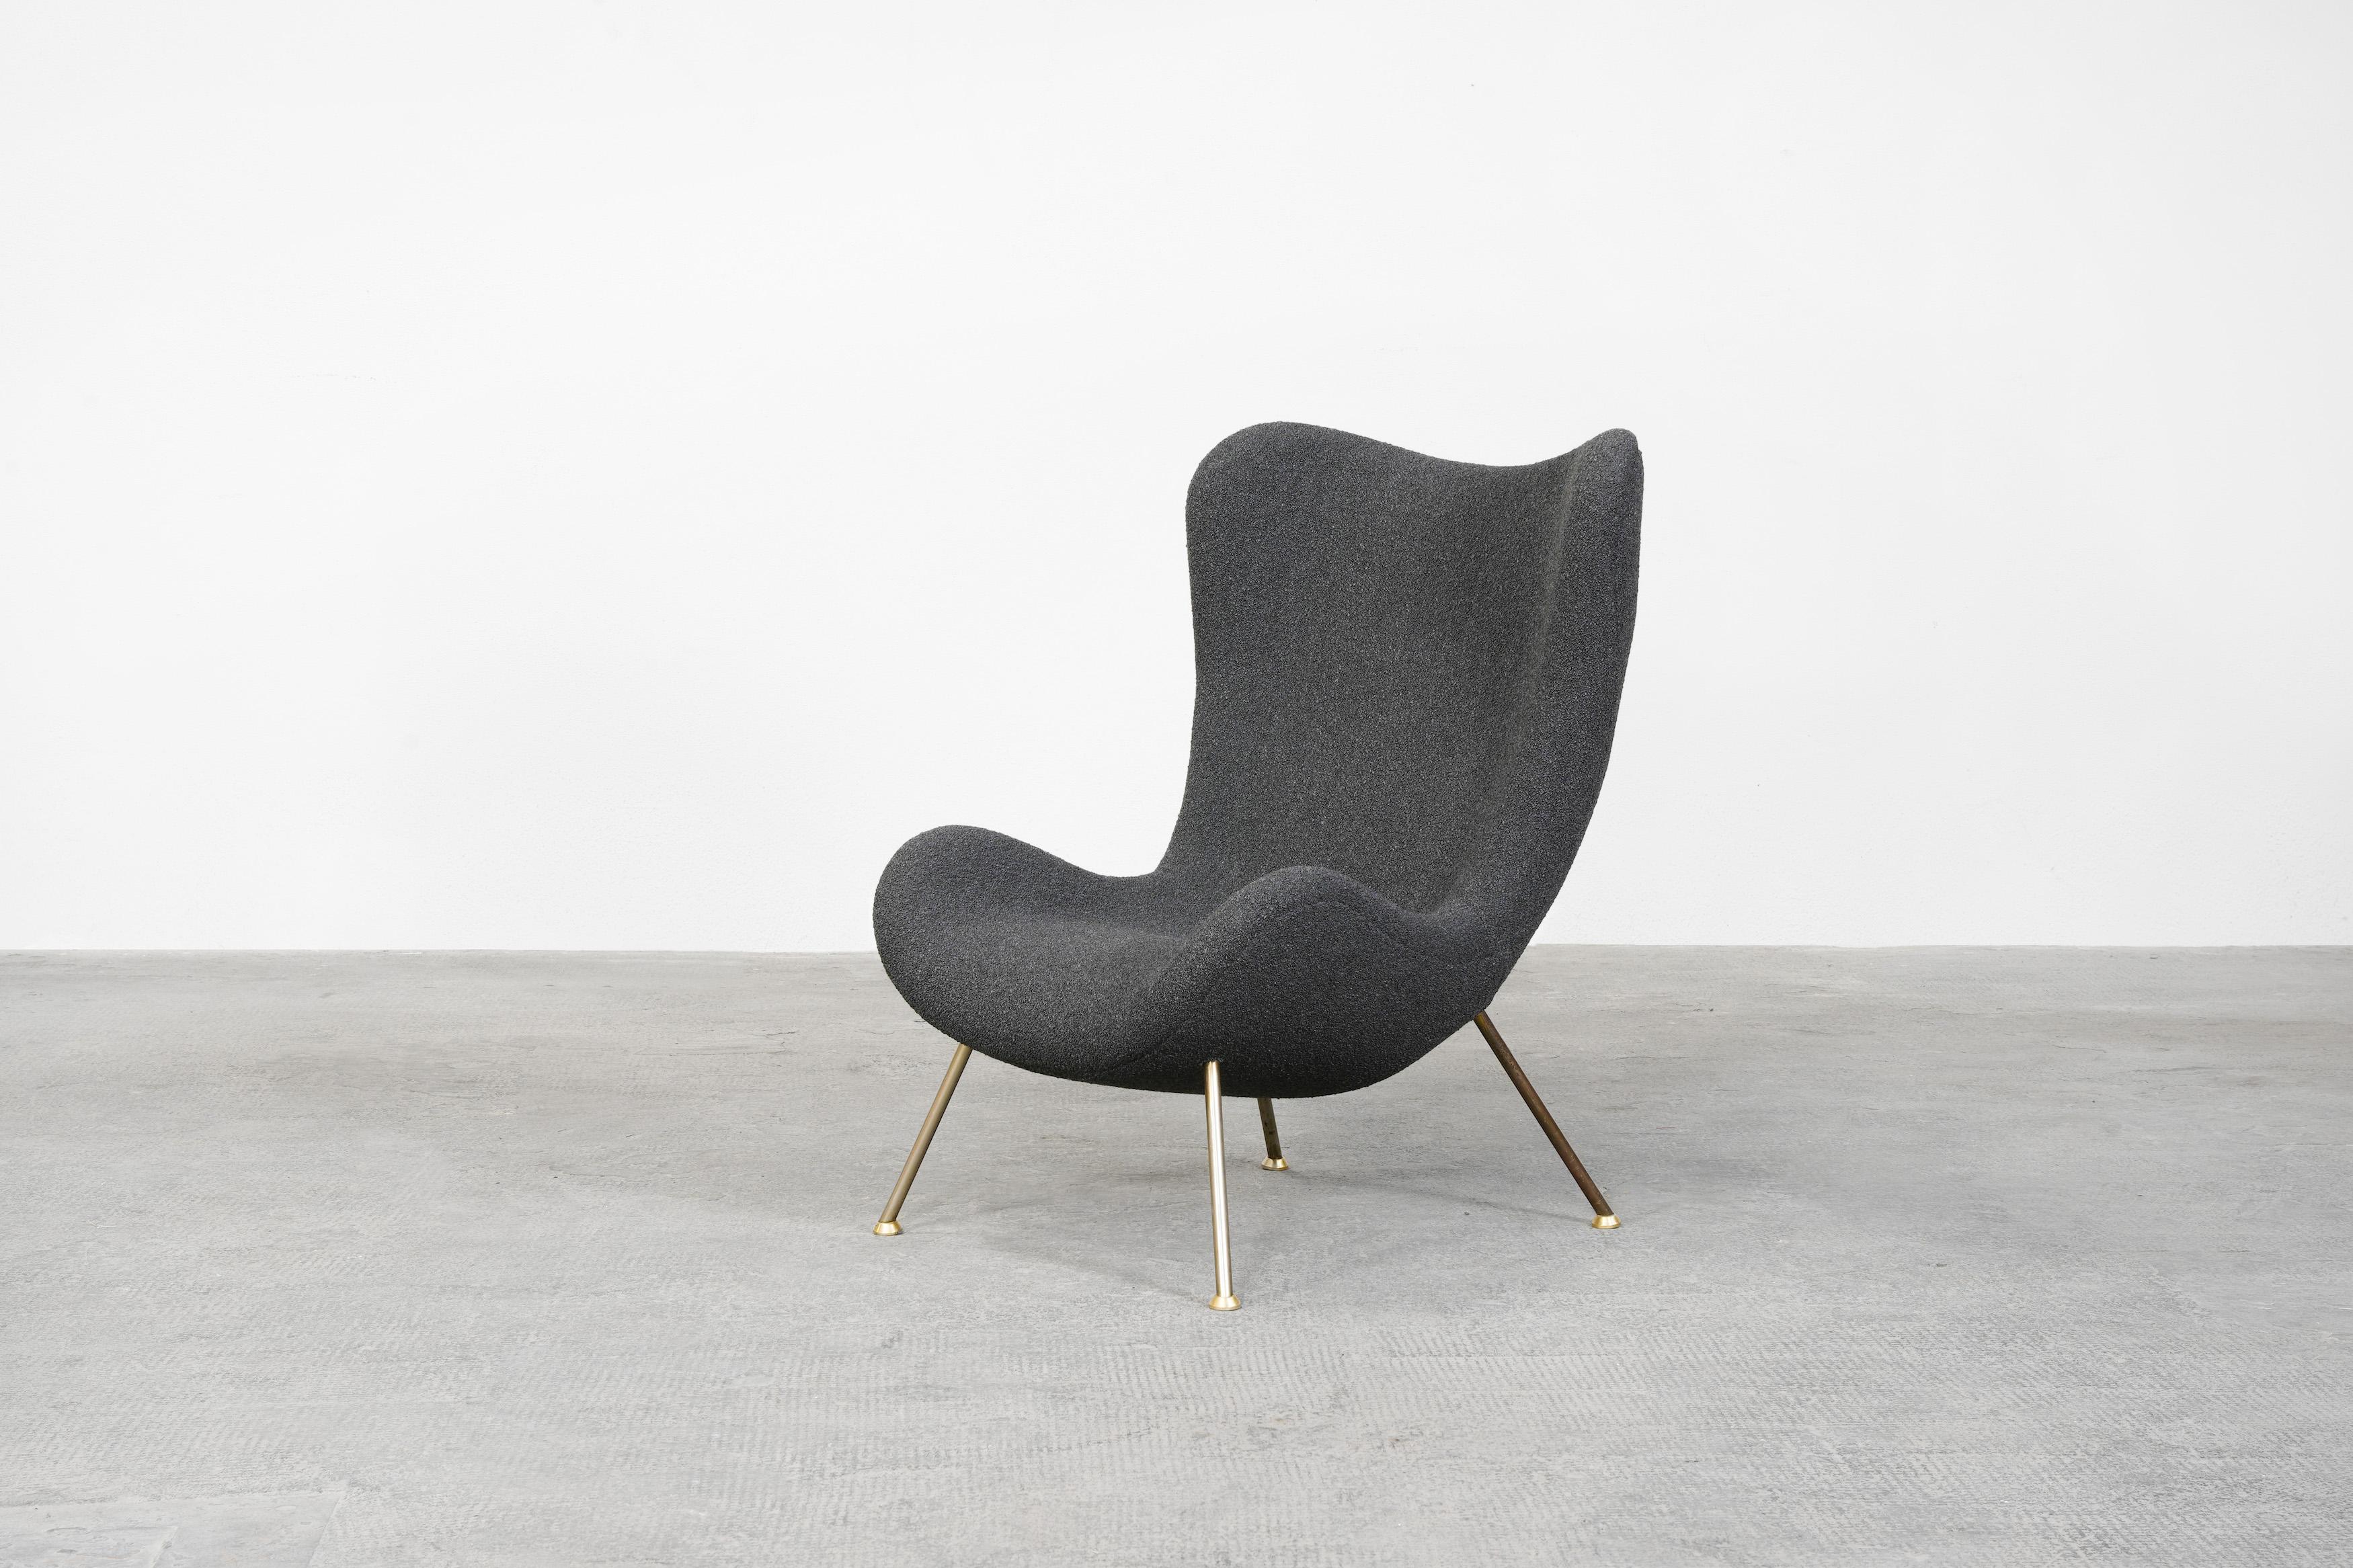 Loungesessel, entworfen von Fritz Neth und hergestellt von Correcta in Deutschland, 1955.
Organisch geformte Sitzschale auf vergoldeten Metallbeinen und mit neuer Polsterung aus hochwertigem grauem Boucle. 
Der Stuhl ist äußerst bequem und befindet